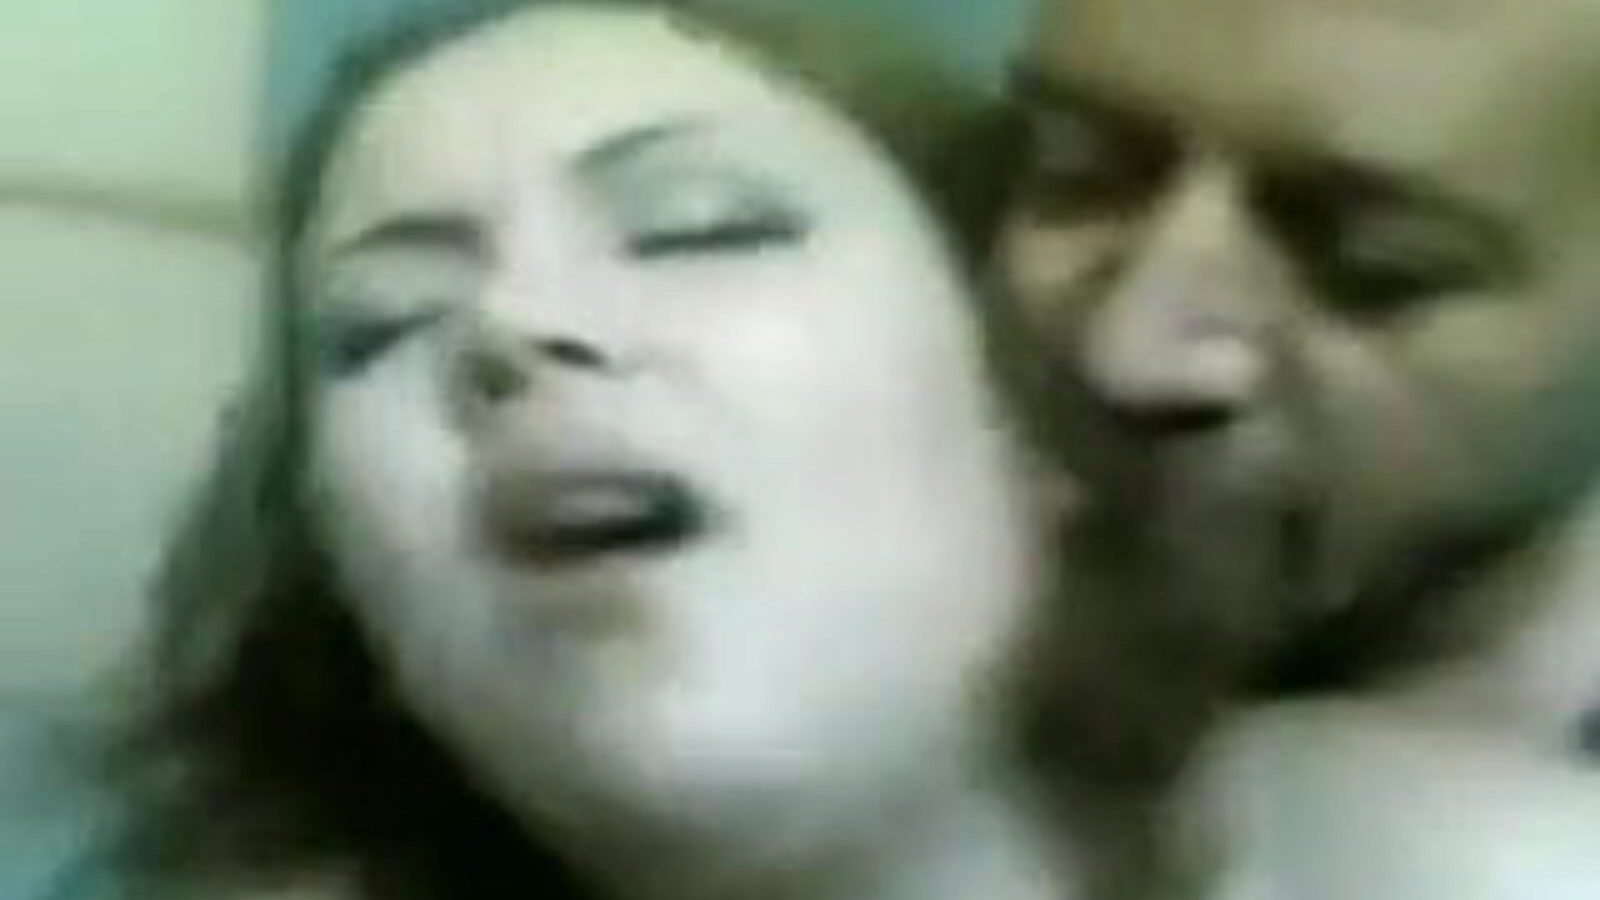 مدام ليلي: فيديو إباحي مجاني تسعة وستين 07 - xhamster شاهد مدام ليلي أنبوب الحب كليب مجانًا للجميع على xhamster ، مع السرب المتفوق للعرب المصريين ، حلقات الفيديو الإباحية ذات المؤخرة الكبيرة 69